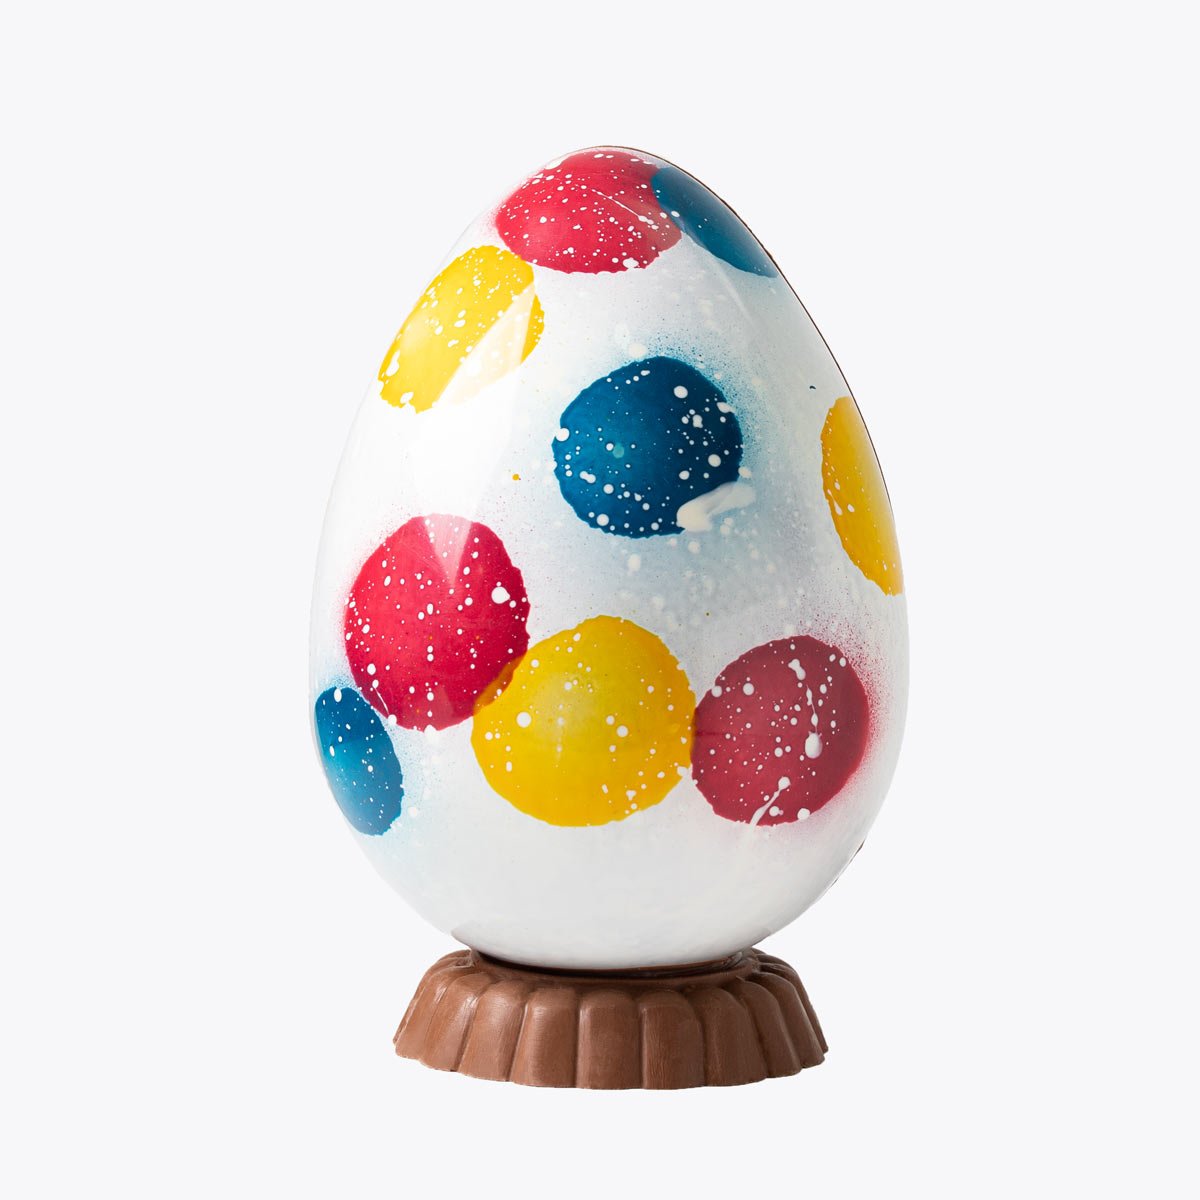 Huevo Decorado con Leche - Nº1 - Bombonería Pons - Huevos decorados